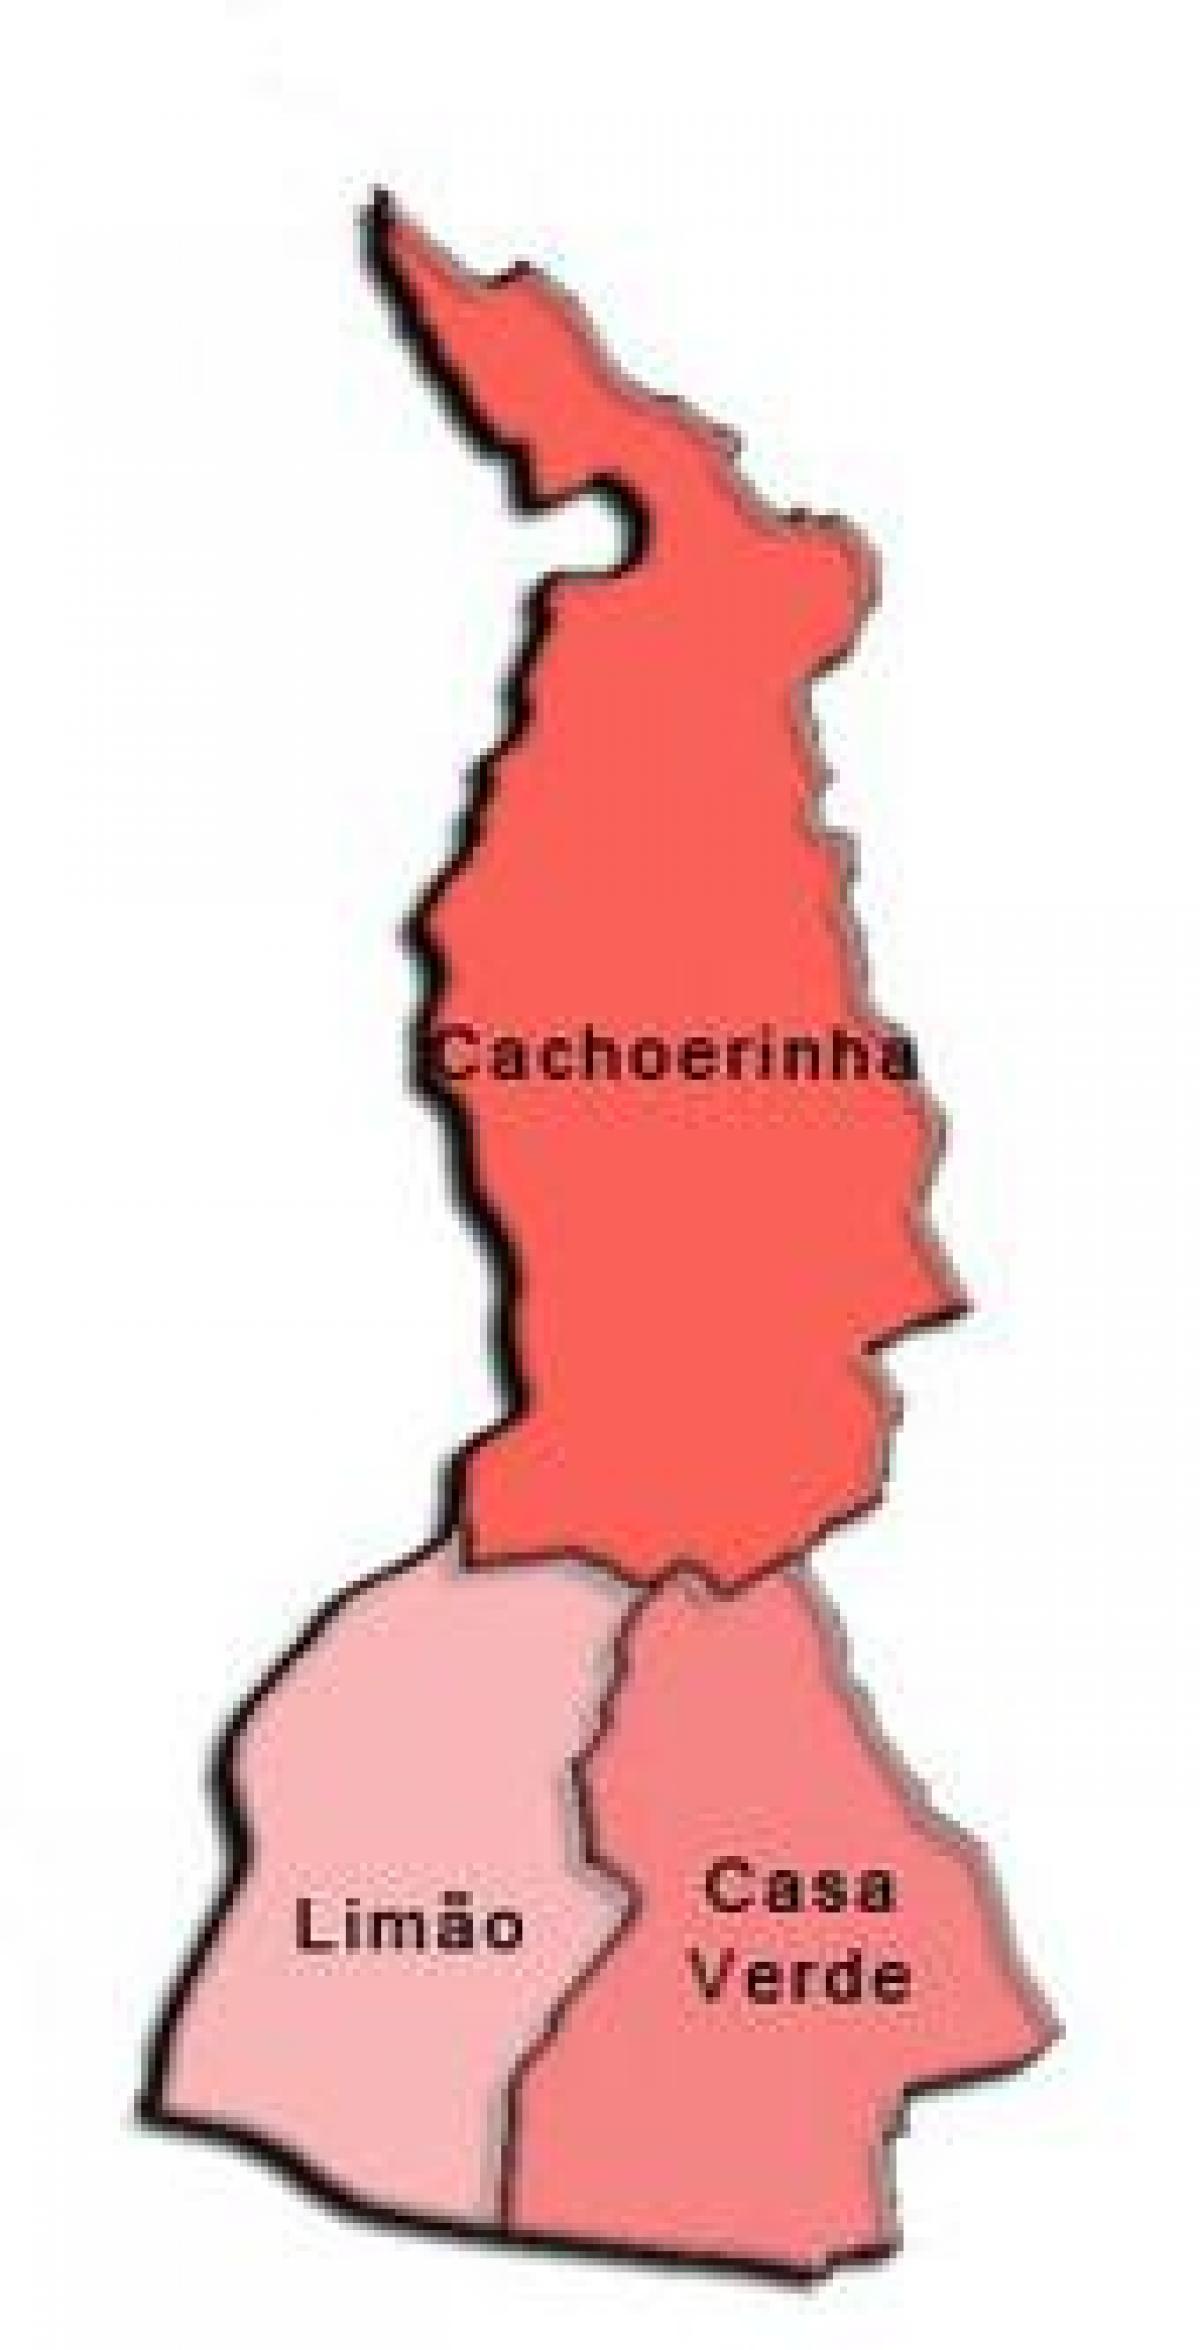 Bản đồ của Casa Verde phụ tỉnh